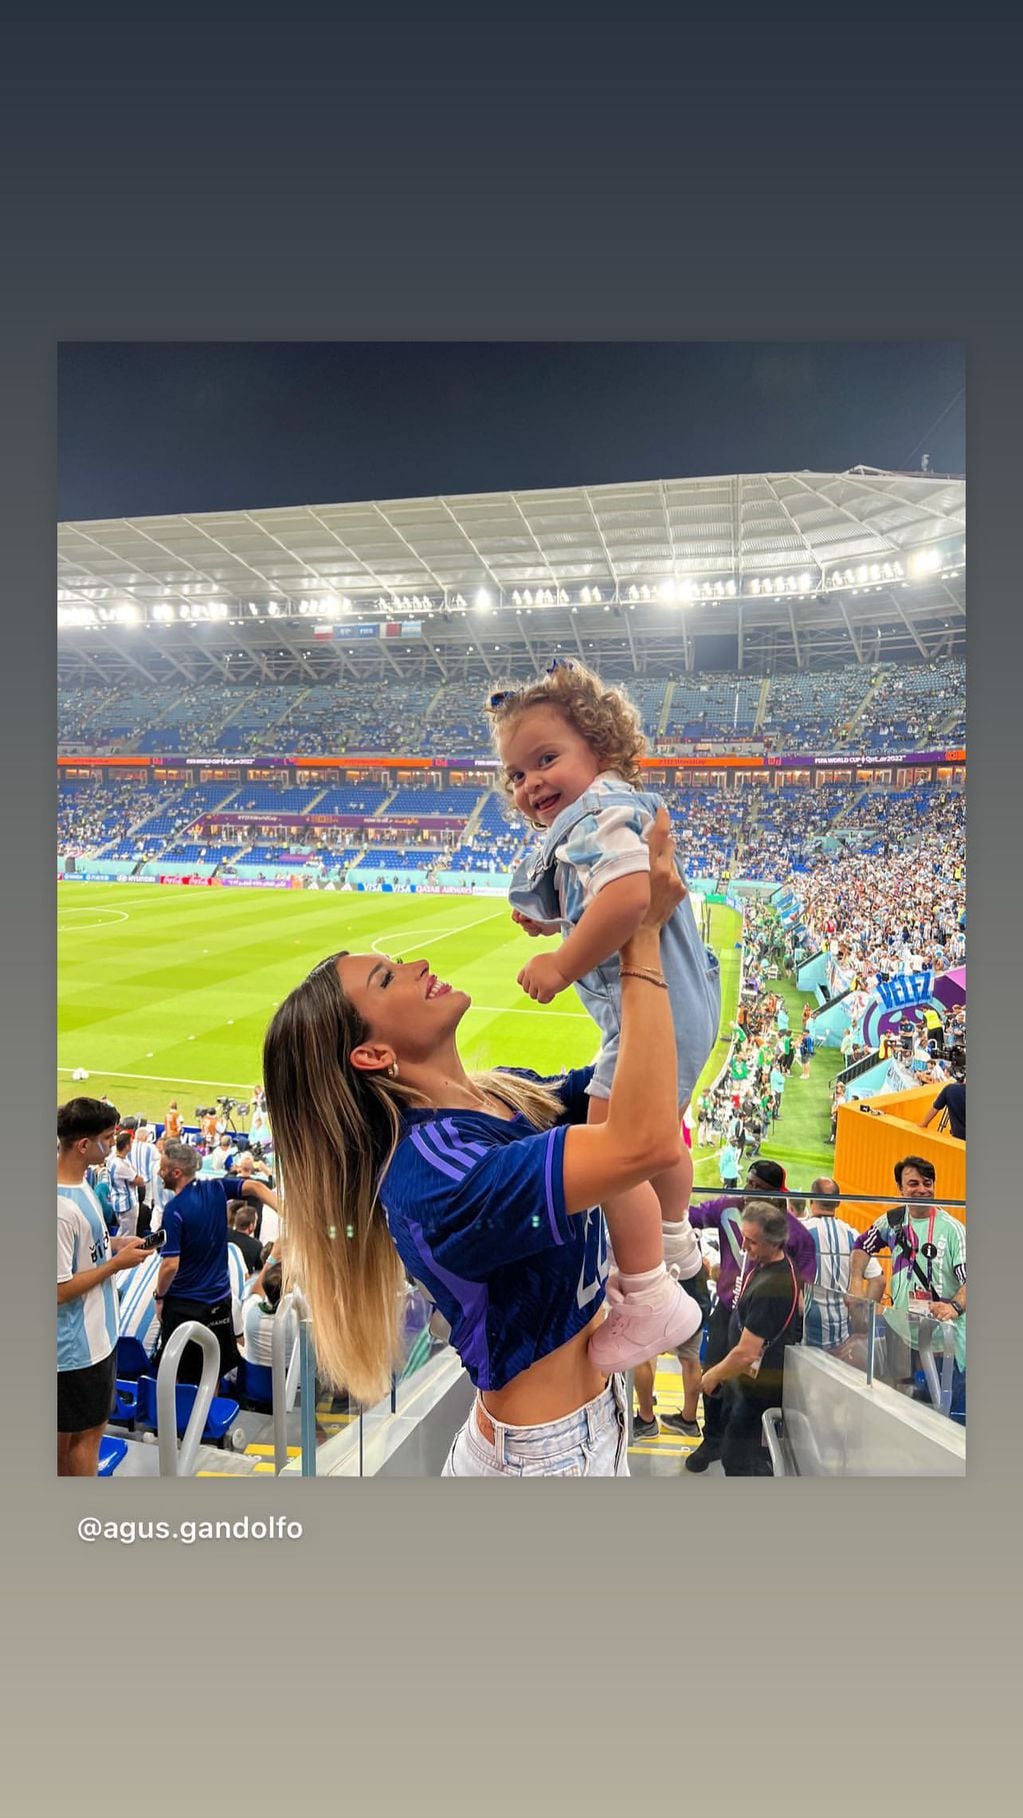 El tierno festejo de Nina, la hija de Lautaro Martínez y Agustina Gandolfo, por la victoria de Argentina.